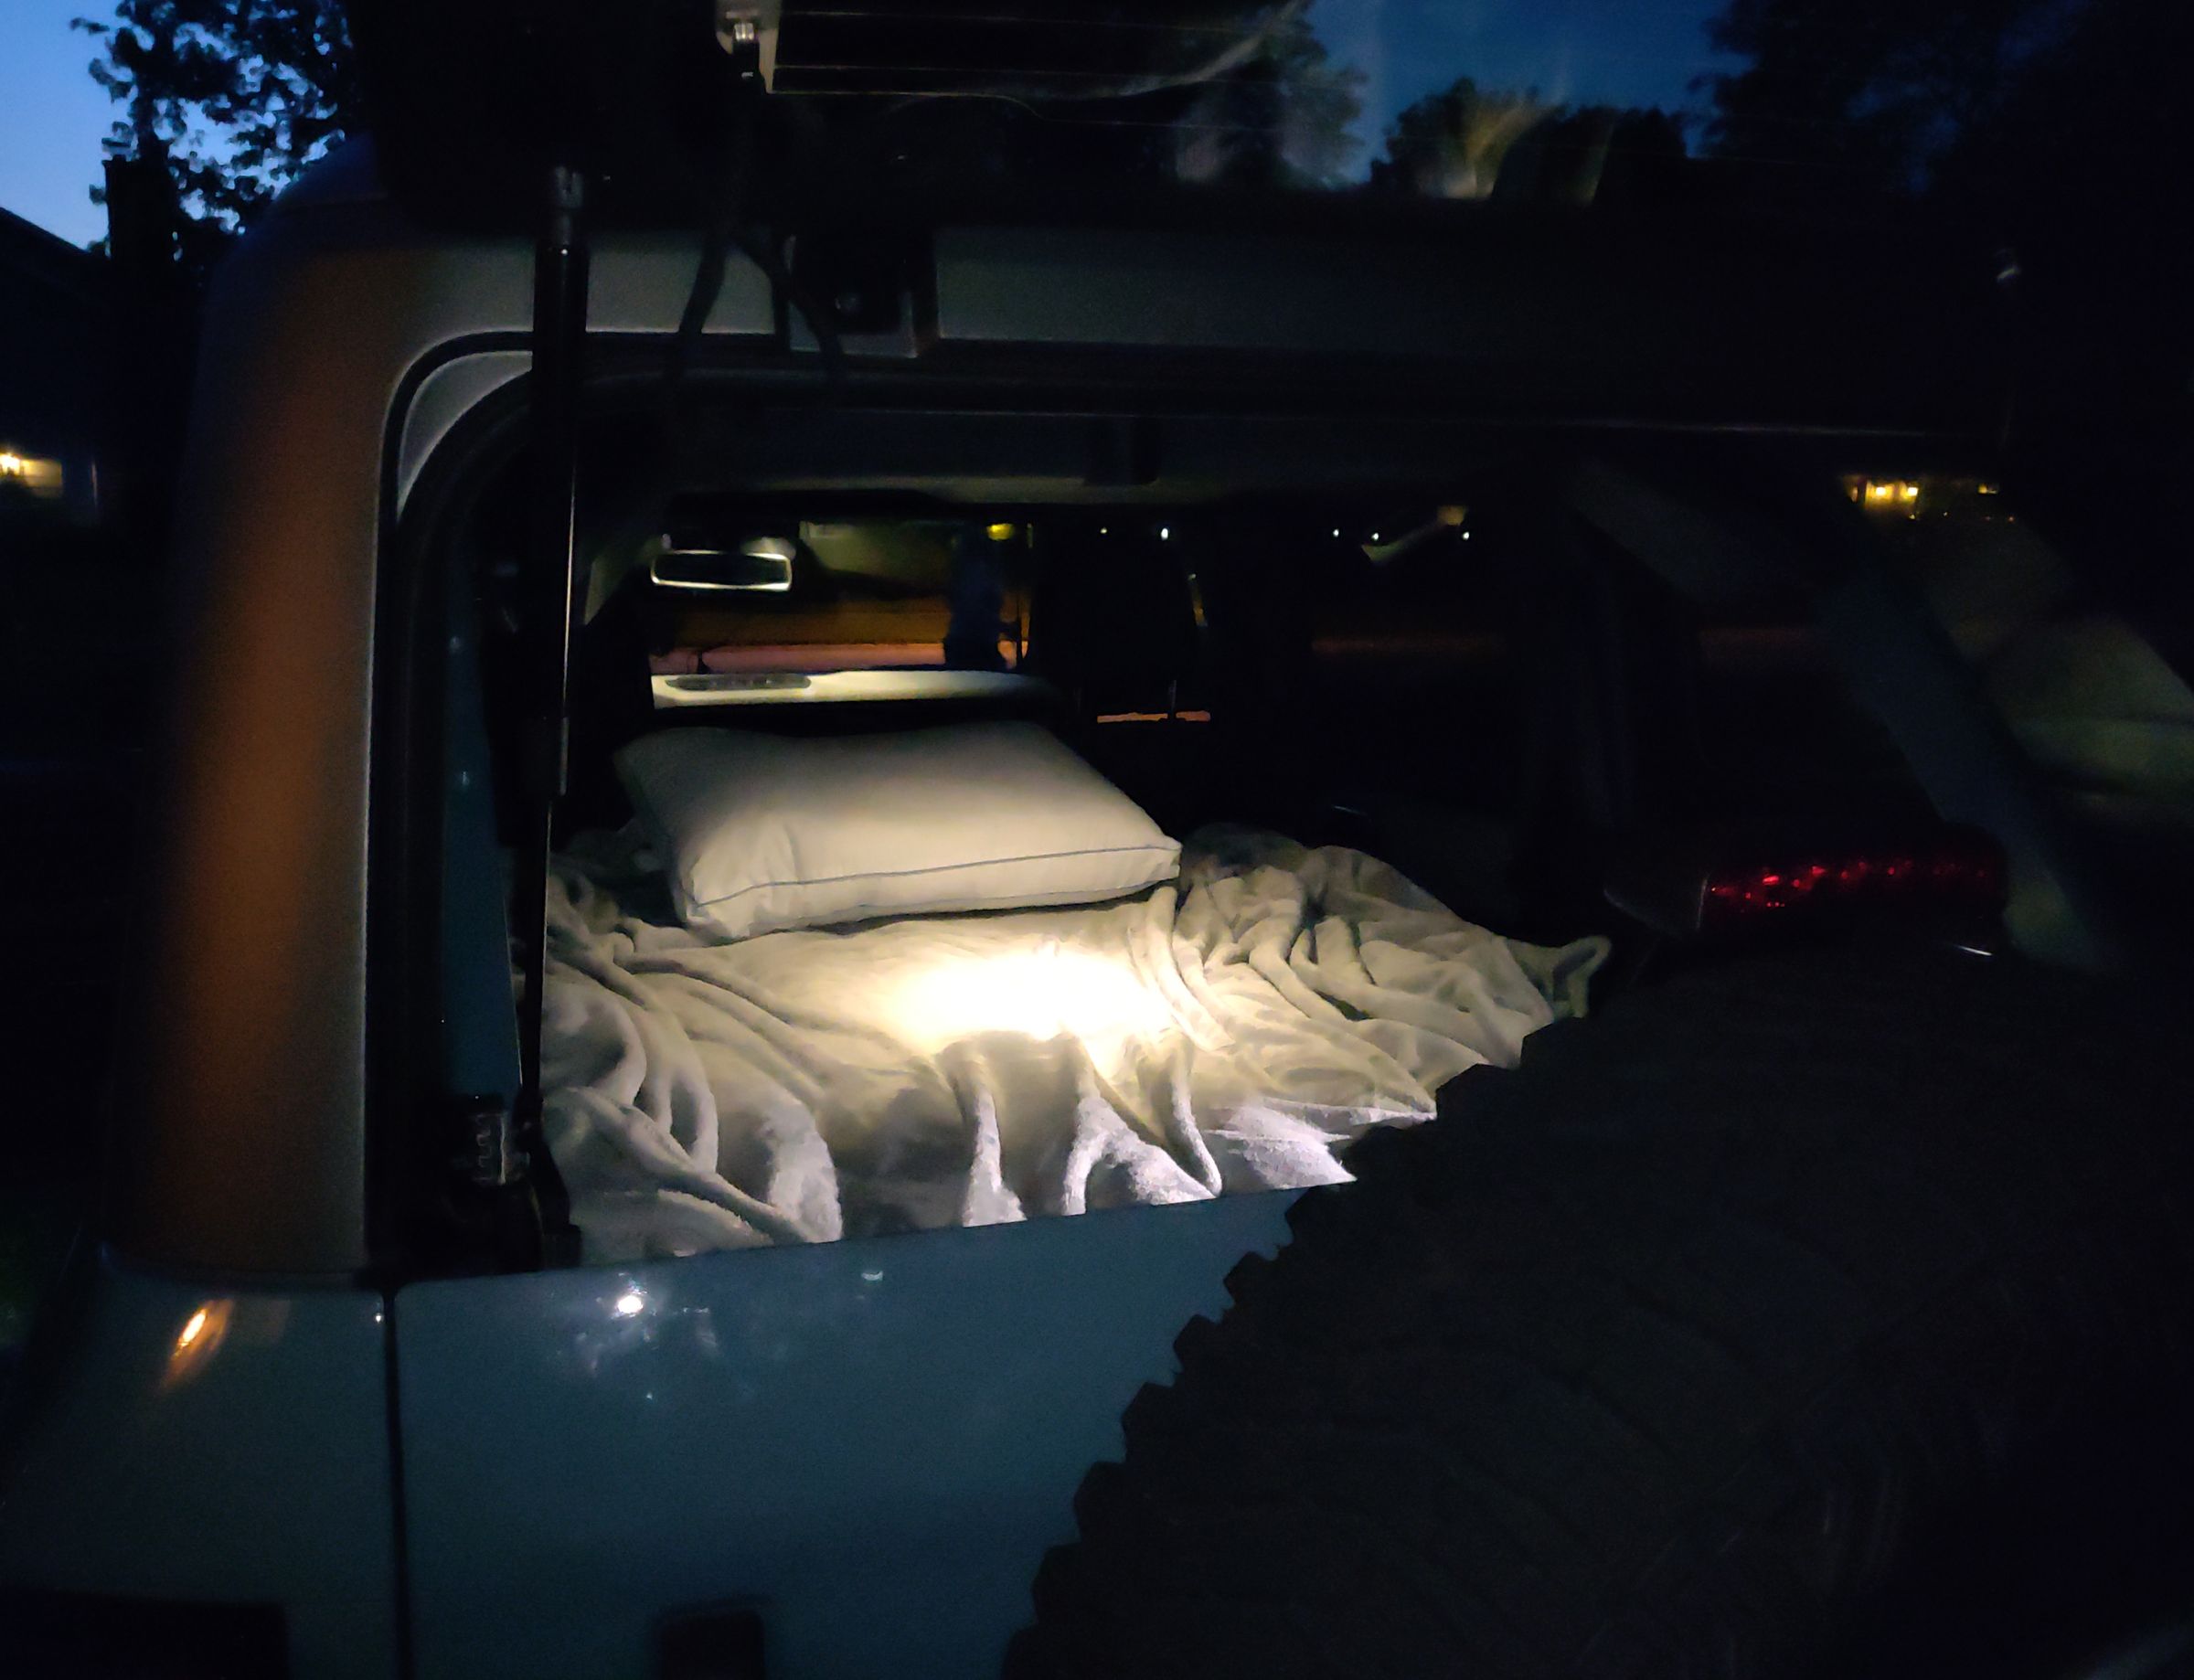 Alarme camping-car - Forum Camping-car - Forums